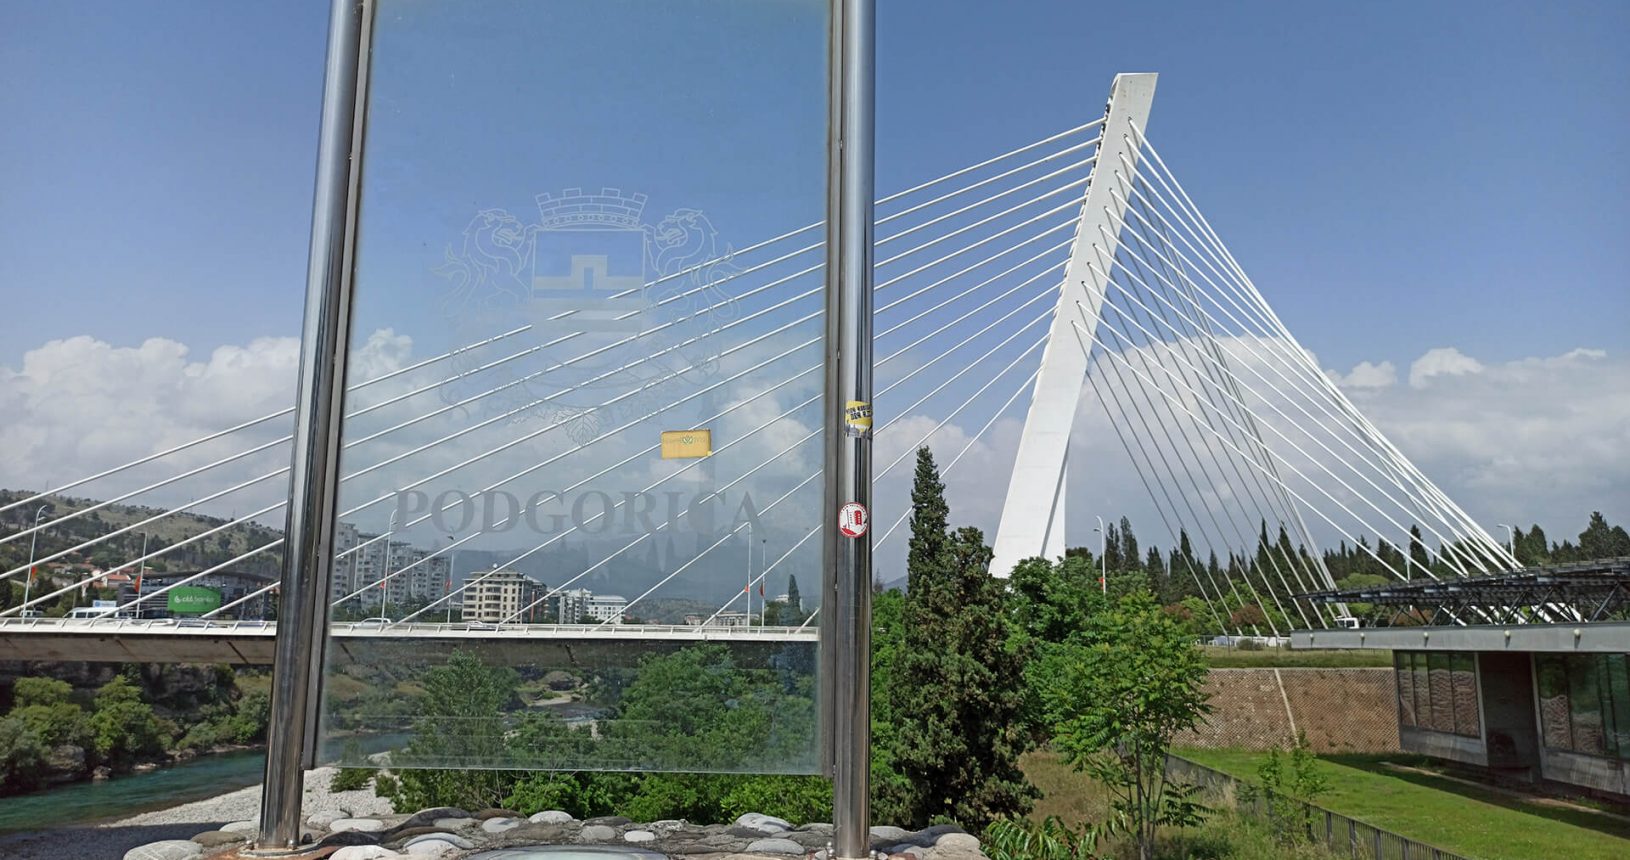 Podgorica on the bridge